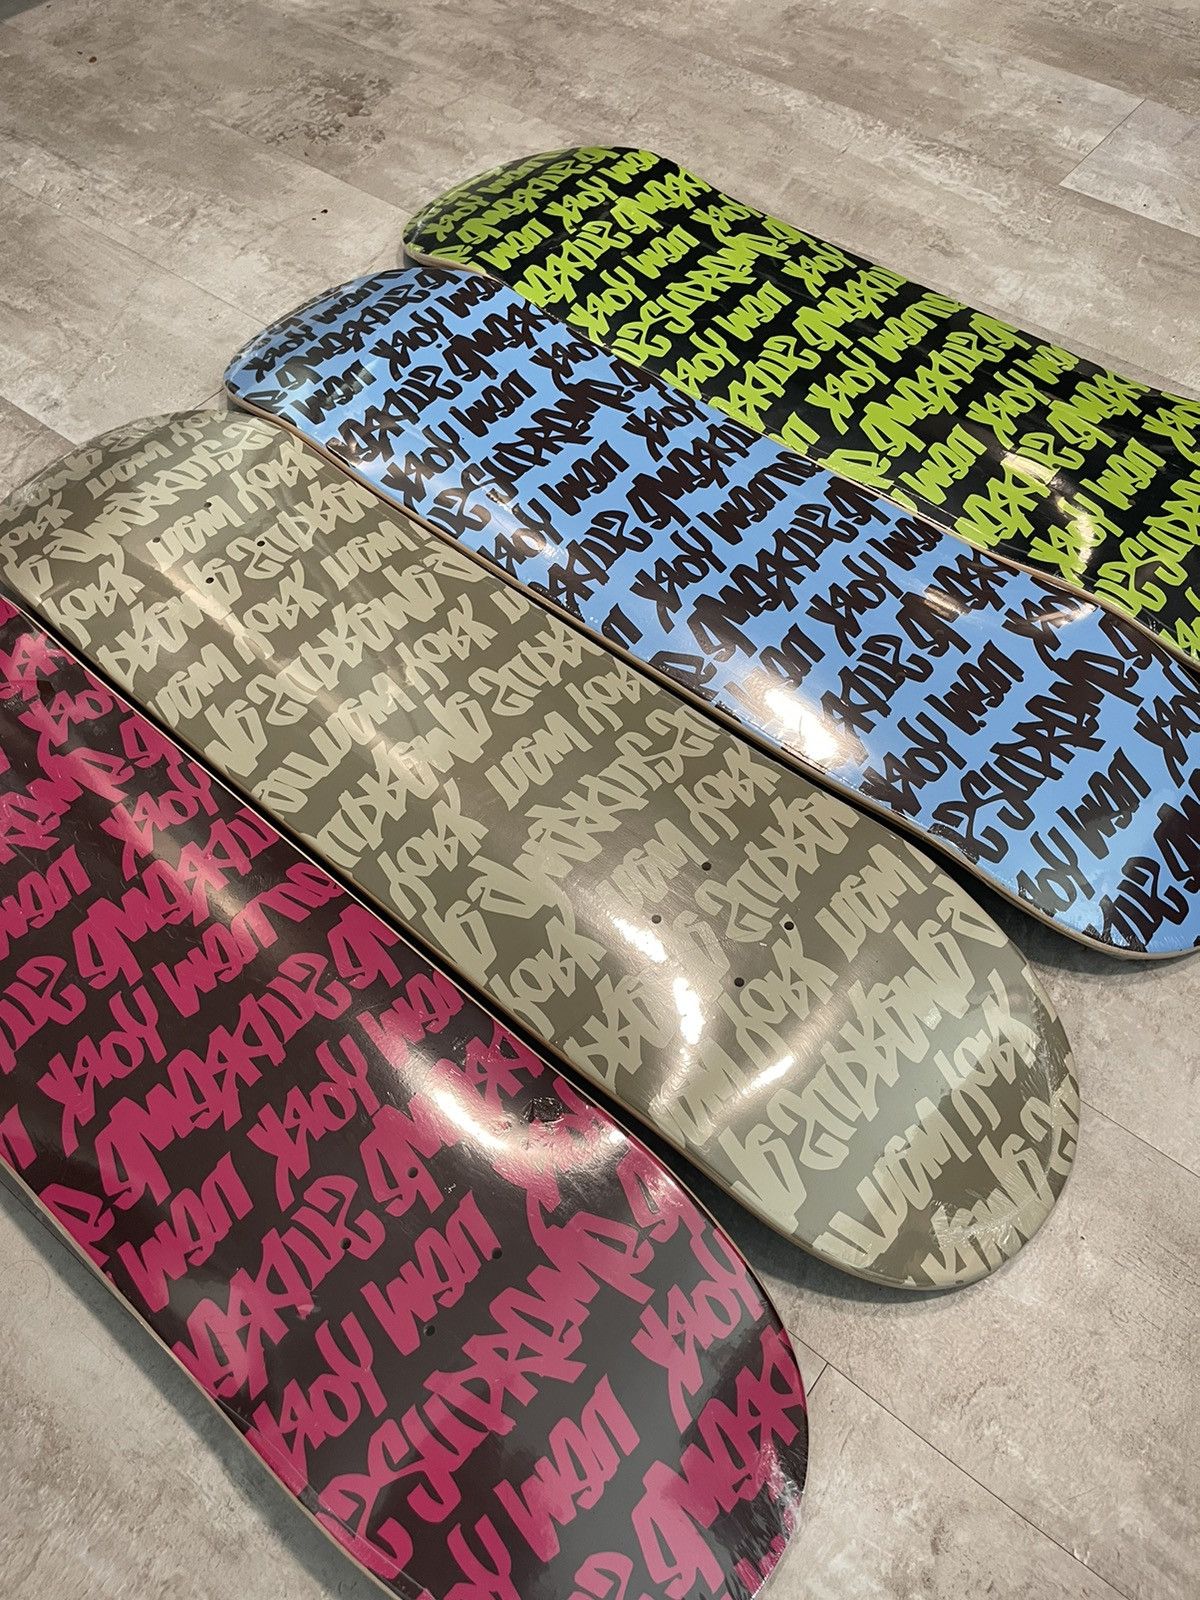 Supreme Supreme Fat Tip Skateboard Deck Set 4 Deck Brand New Grailed